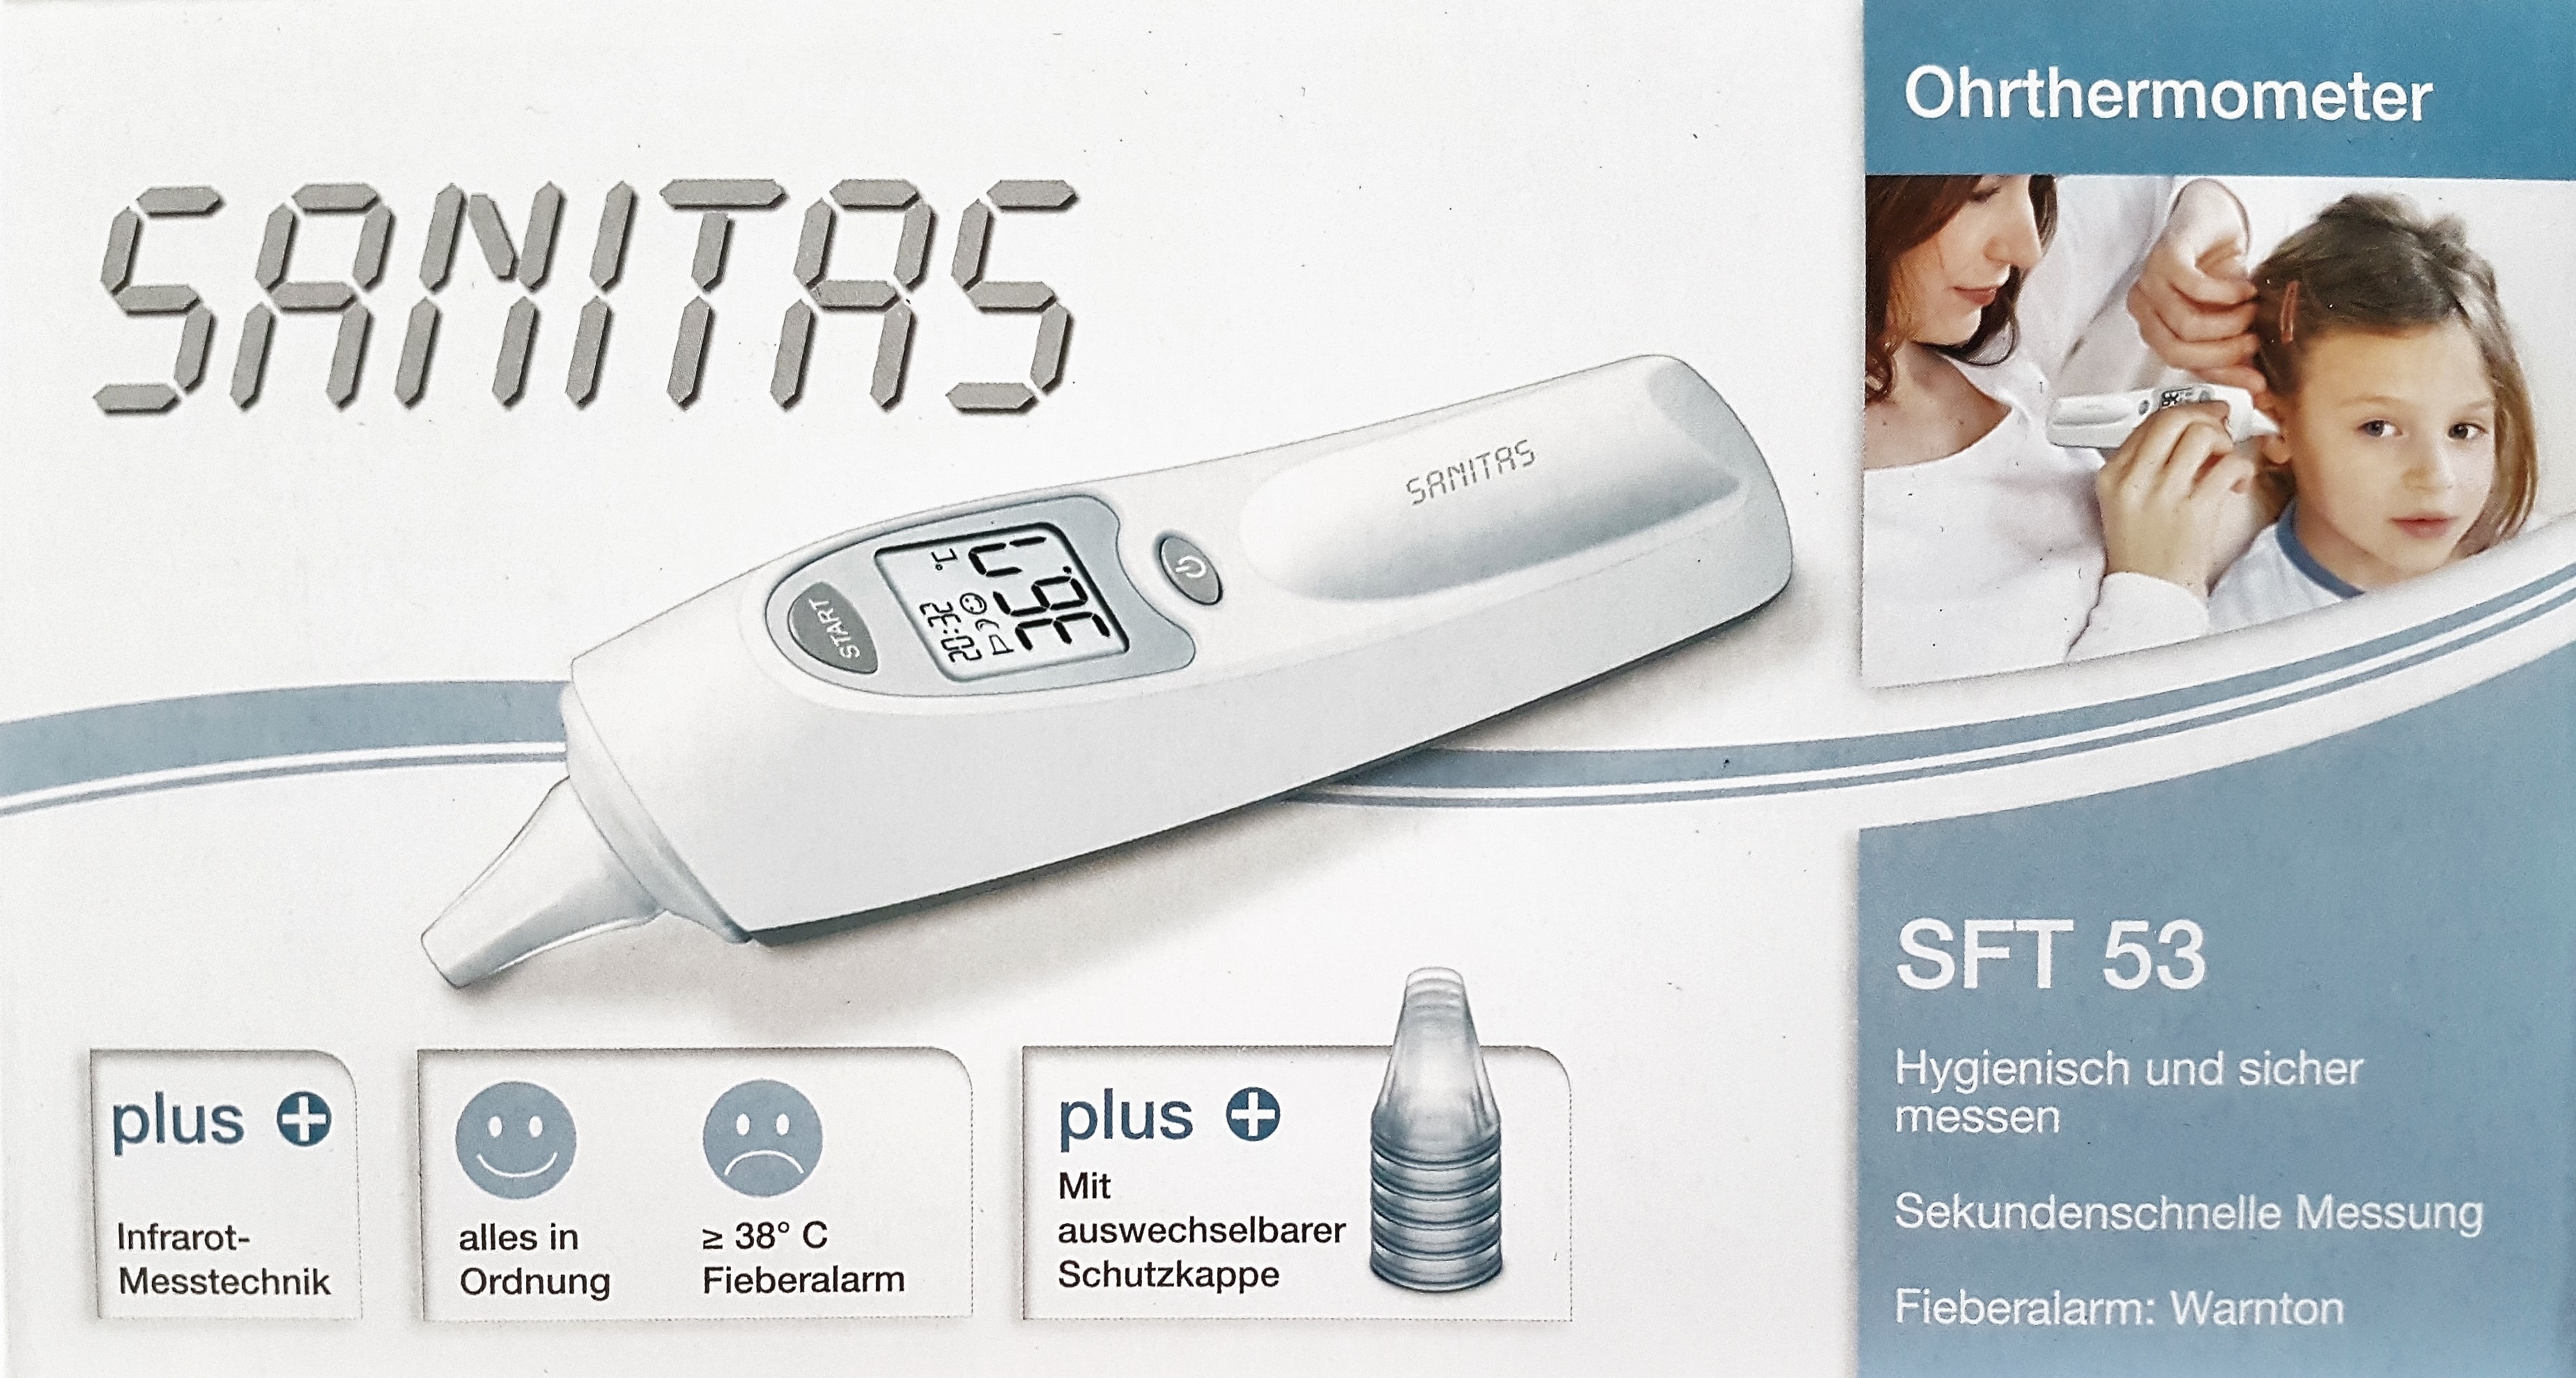 Sanitas Ohrthermometer für Kinder oder Erwachsene. Hygienisch und sicher  messen mit Infrarot Messtechnik. In 1 Sekunde Ergebnis. | Buymix | Fieberthermometer